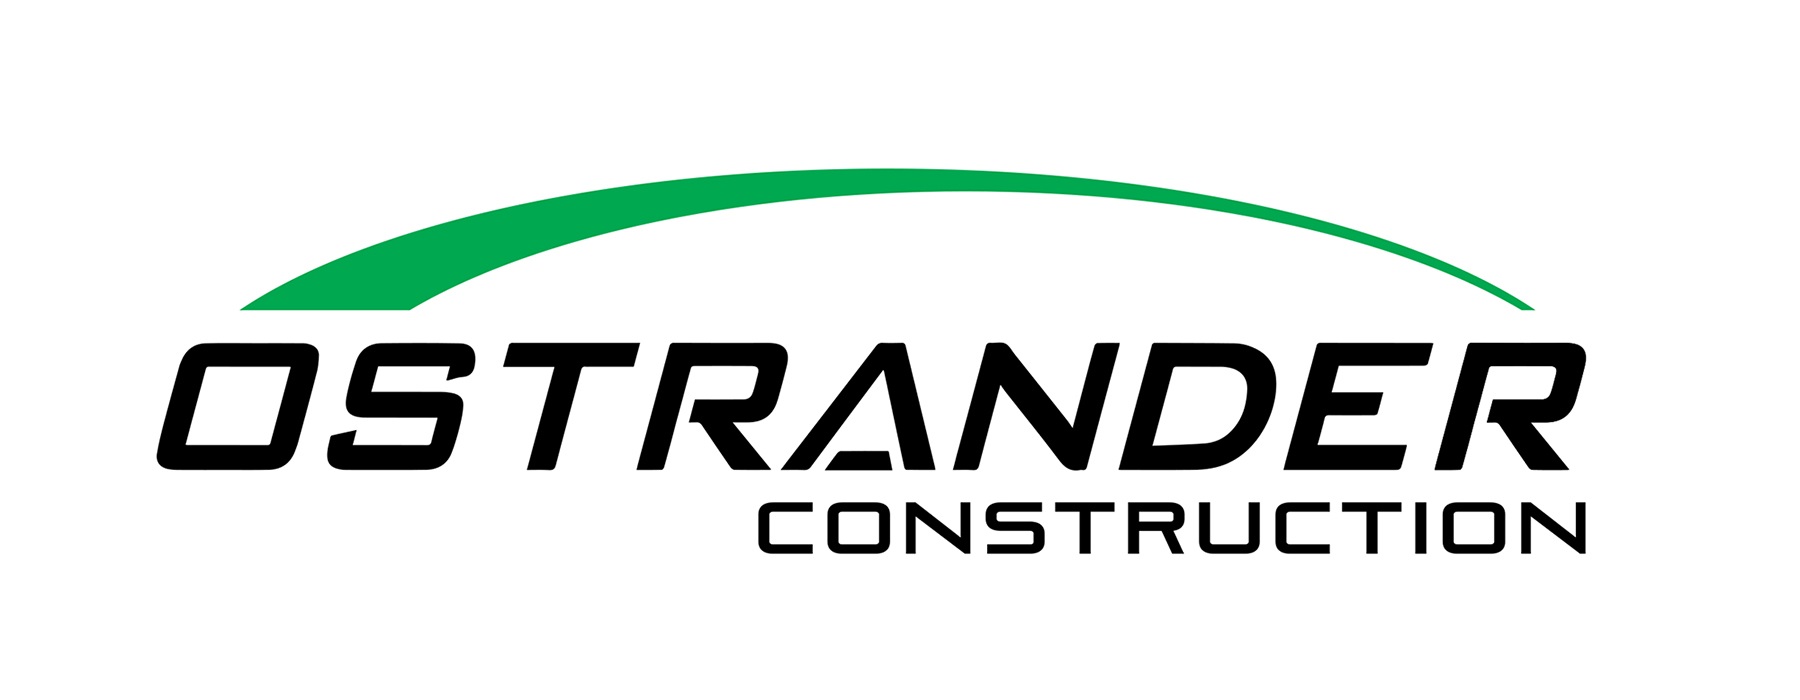 Ostrander Construction logo